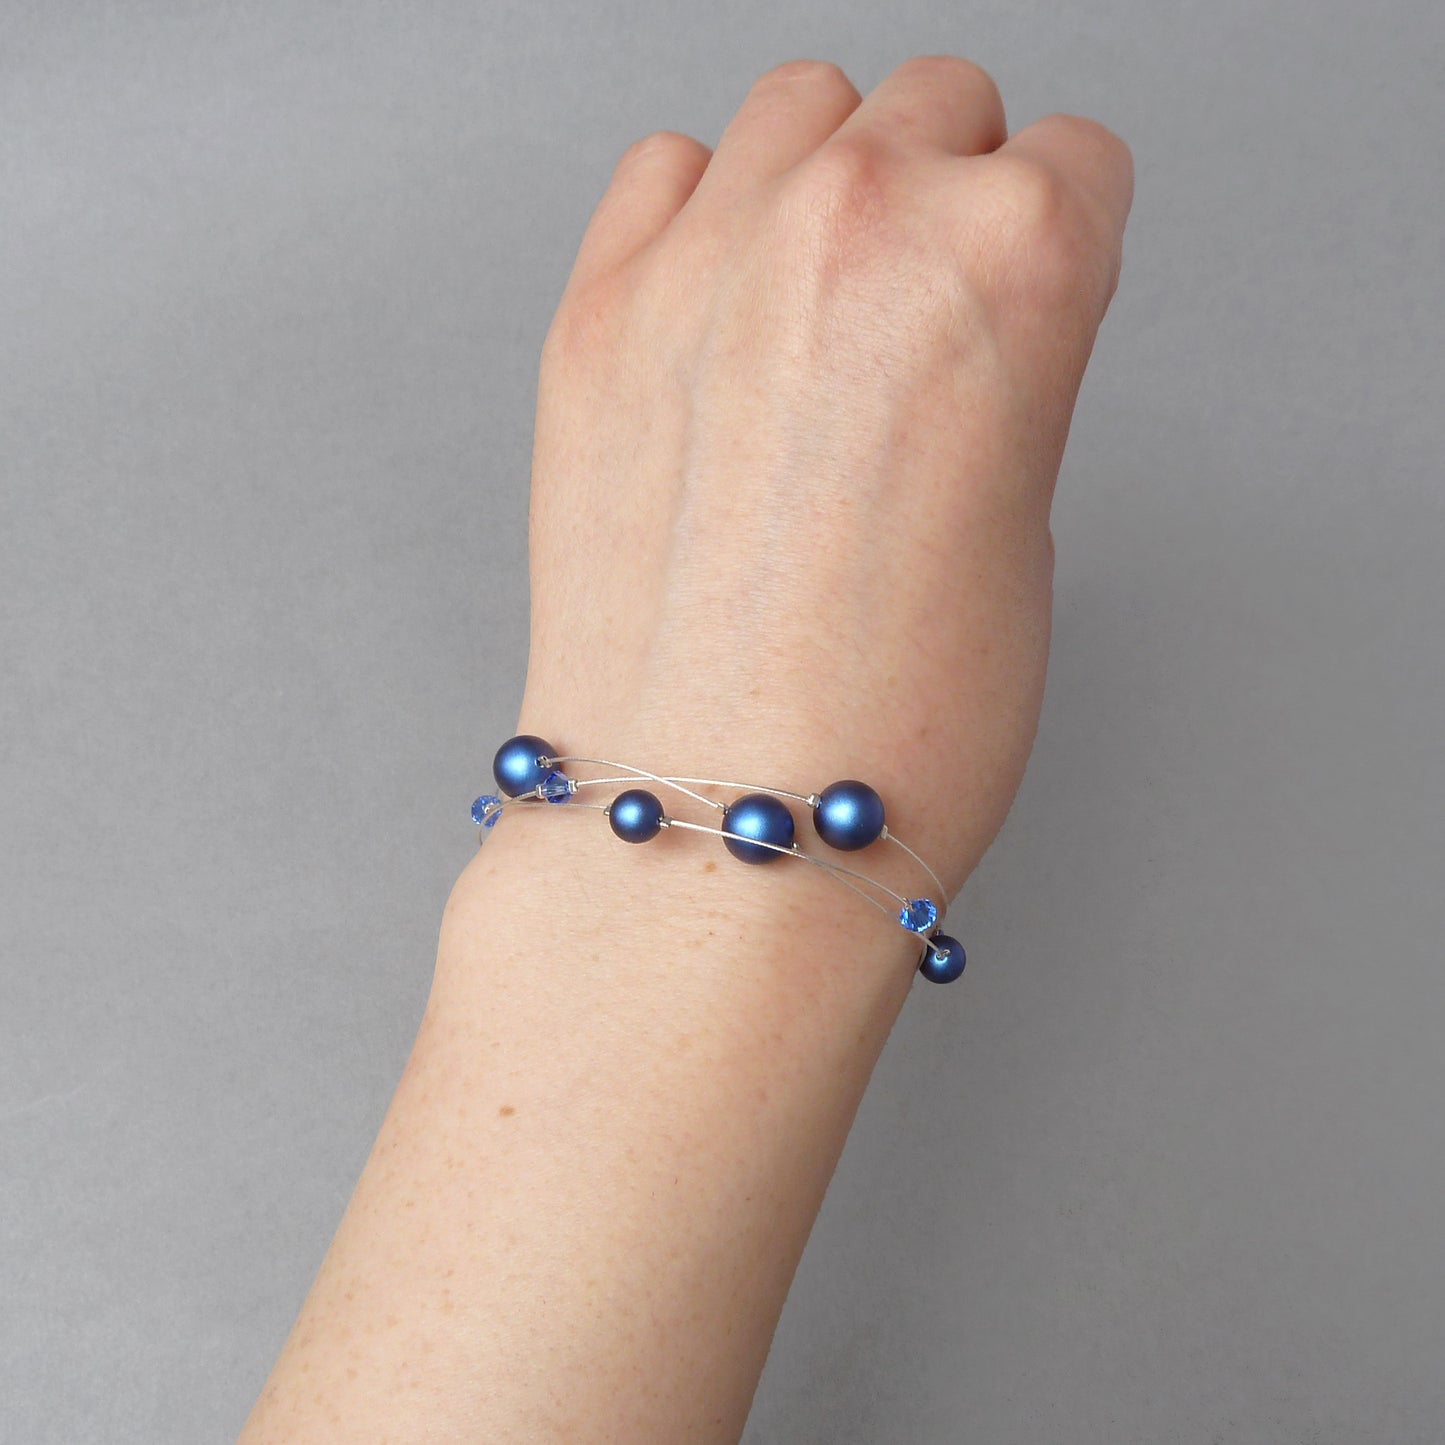 Dainty blue pearl bracelet